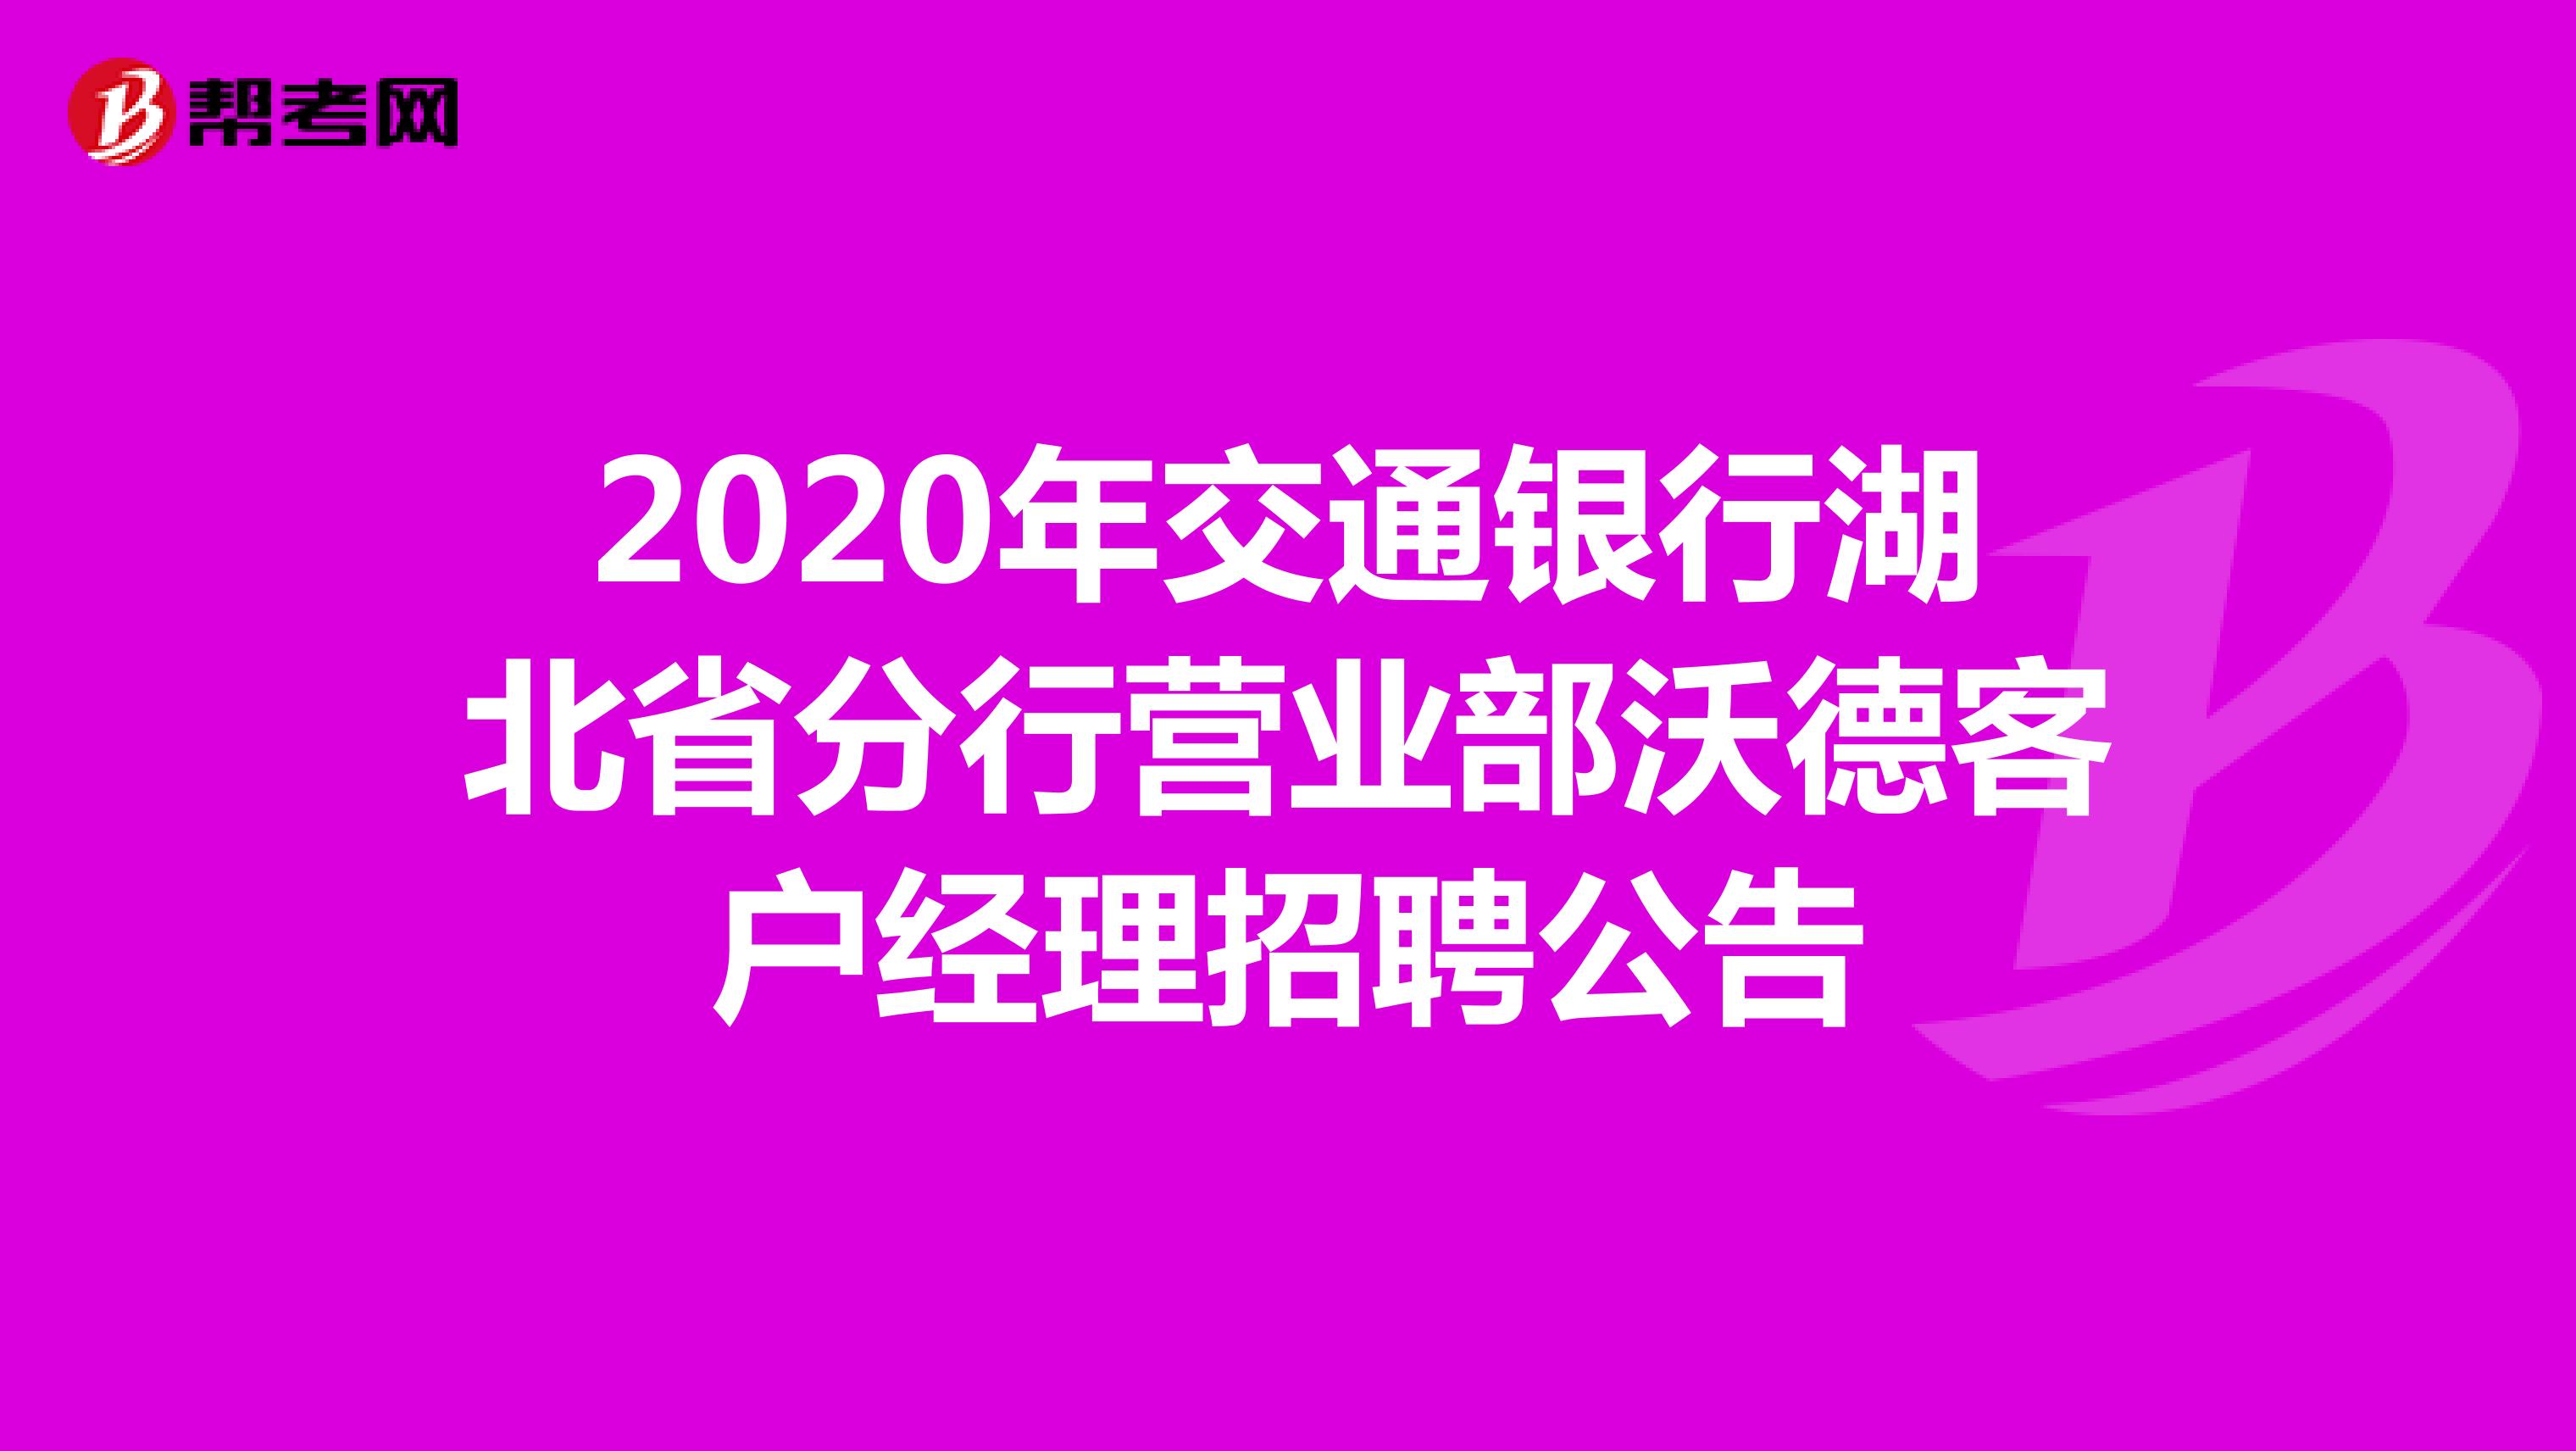 2020年交通银行湖北省分行营业部沃德客户经理招聘公告